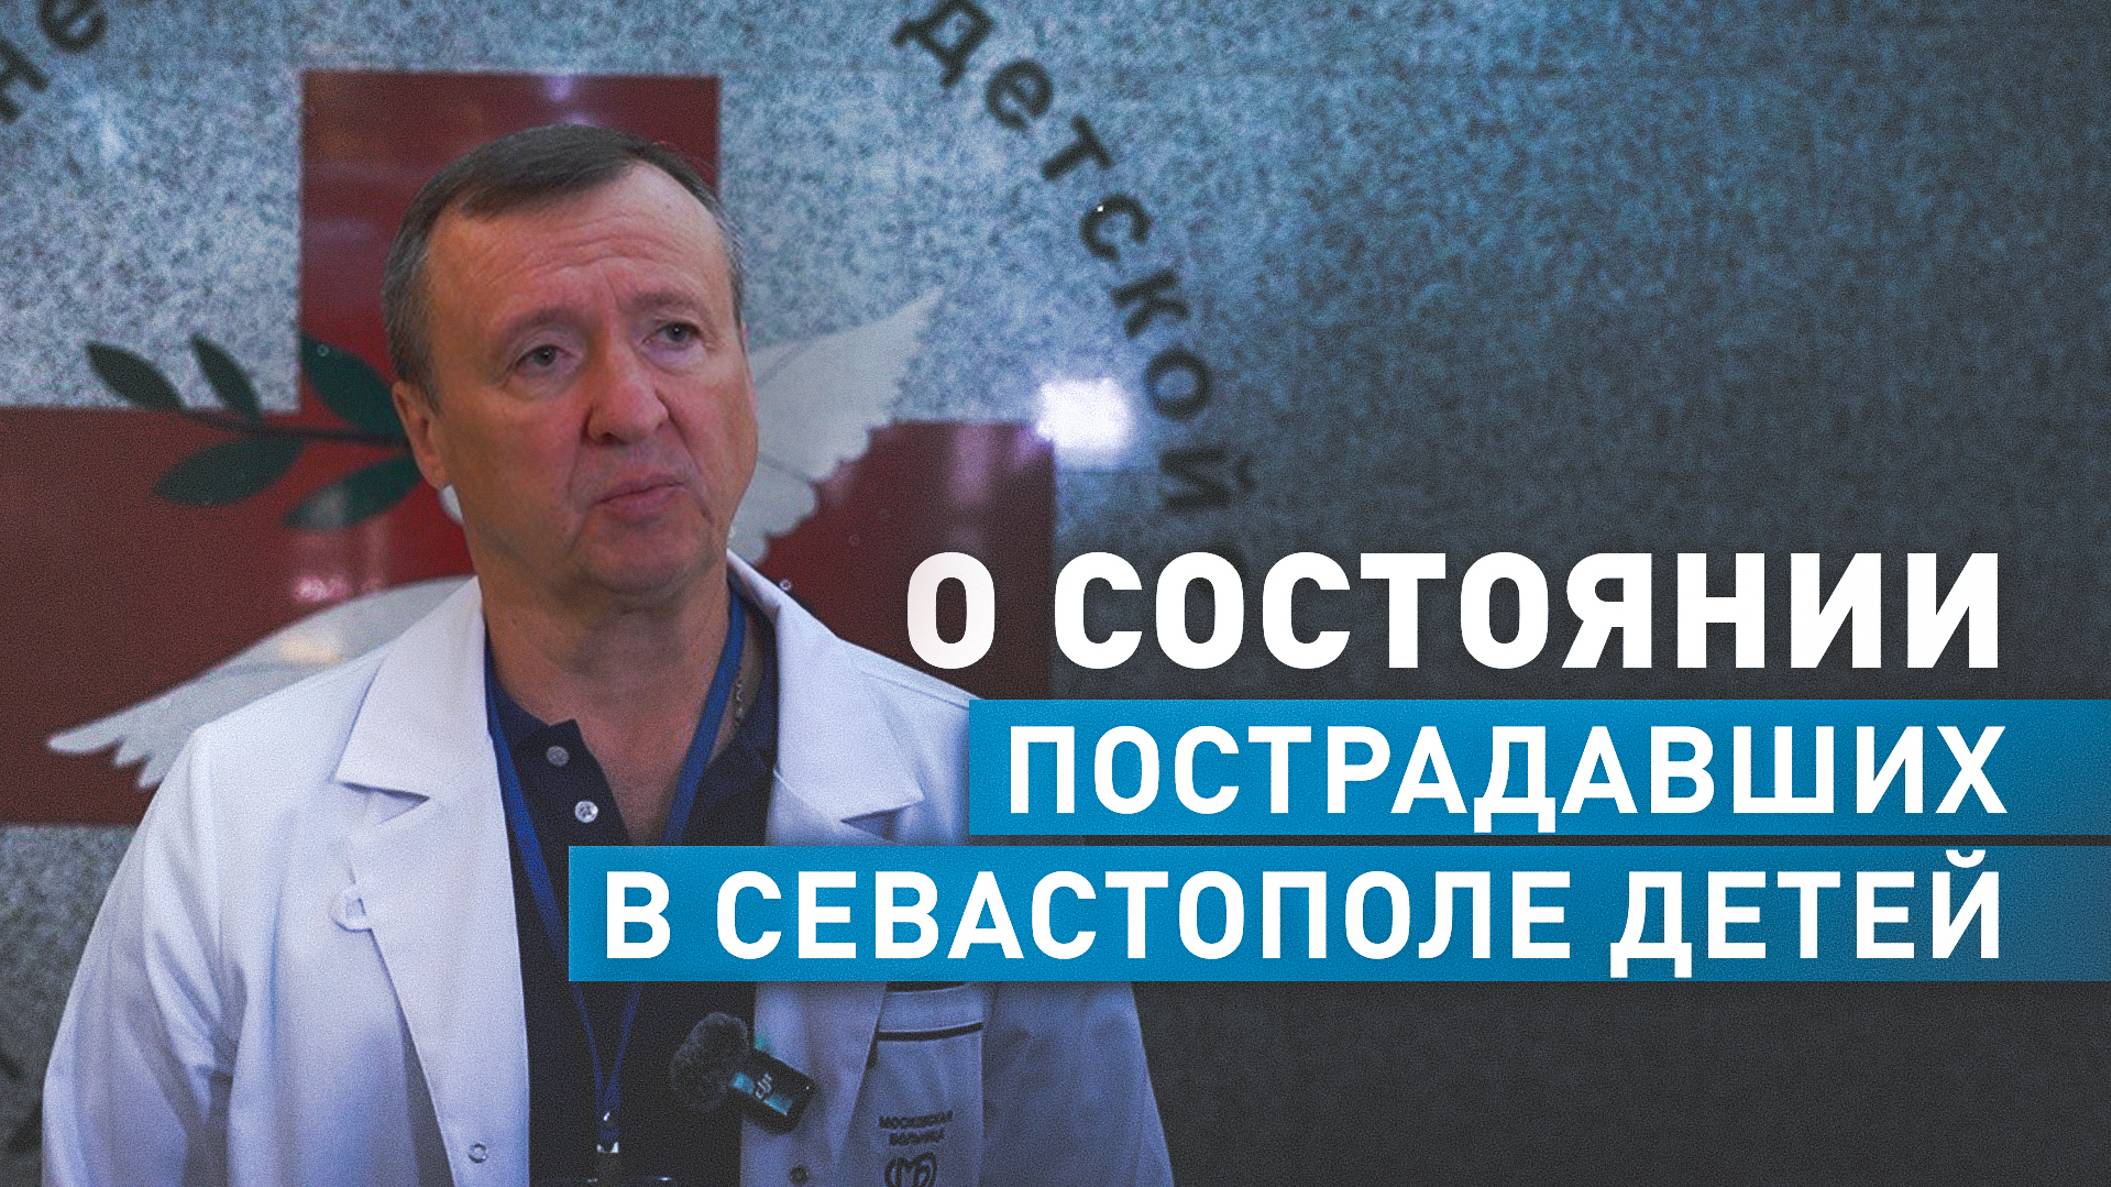 Директор НИИ неотложной детской хирургии рассказал о состоянии пострадавших в Севастополе детей